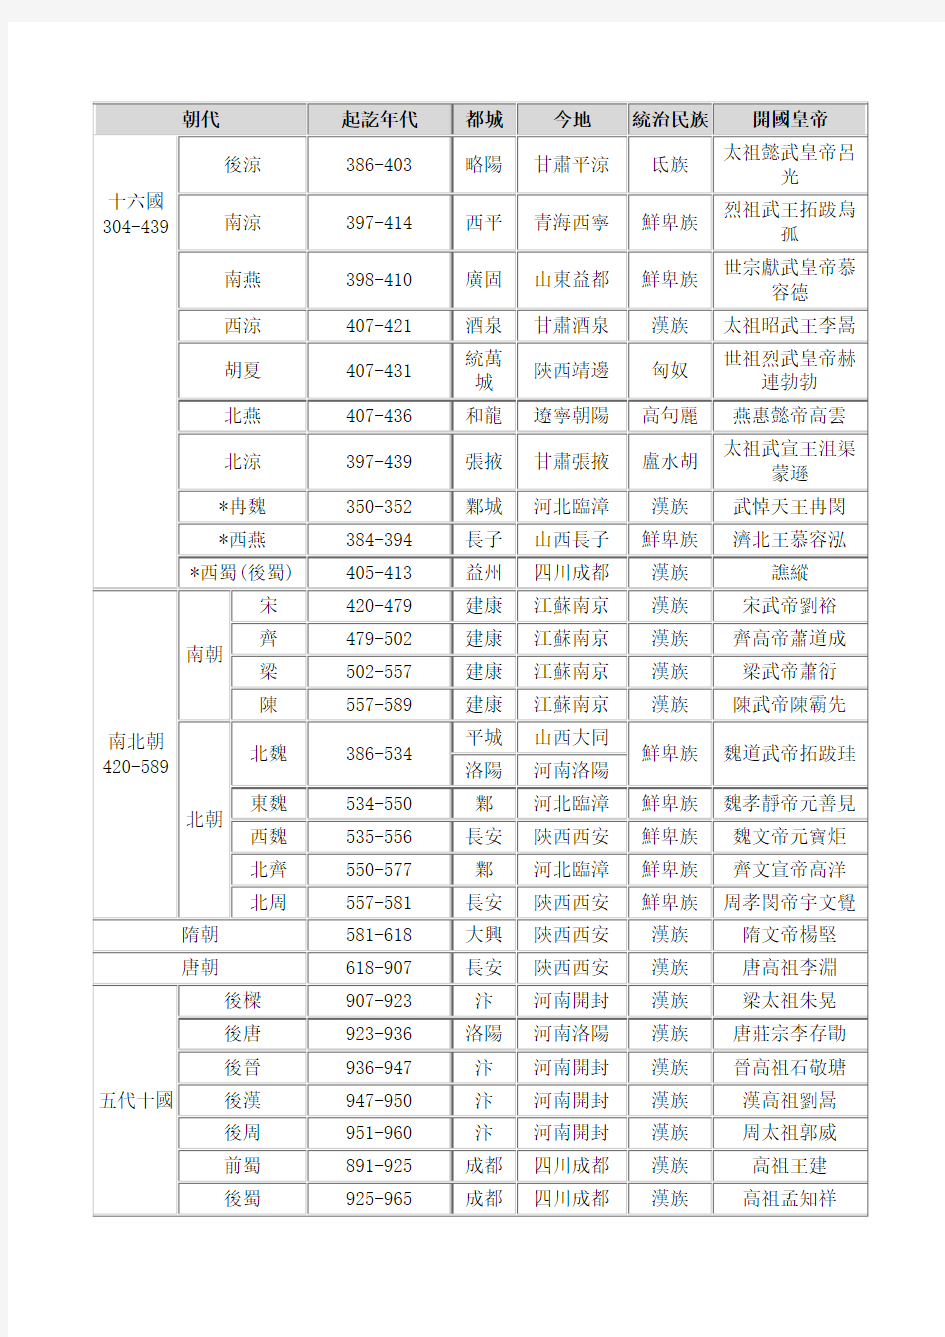 中国历史朝代顺序表、年表(完整版)-繁体-打印